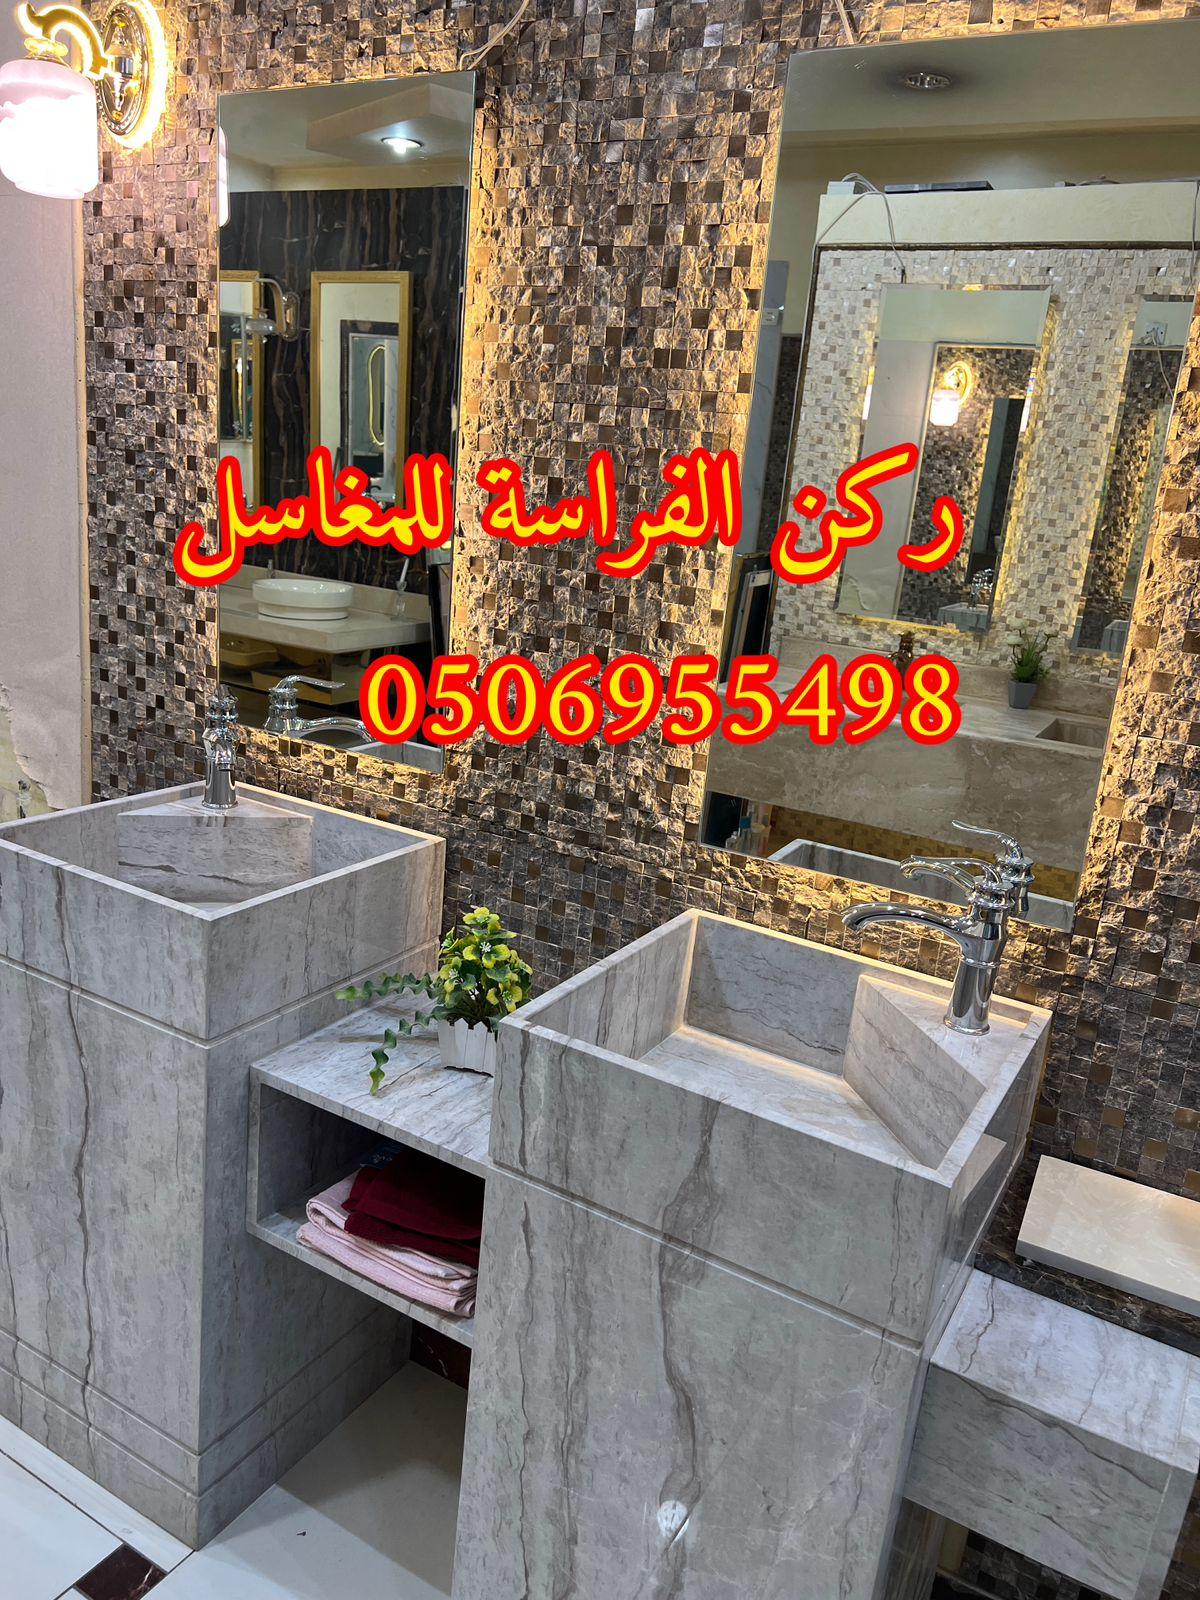 الرياض - ديكورات مغاسل حمامات رخام في الرياض,0506955498 799850547